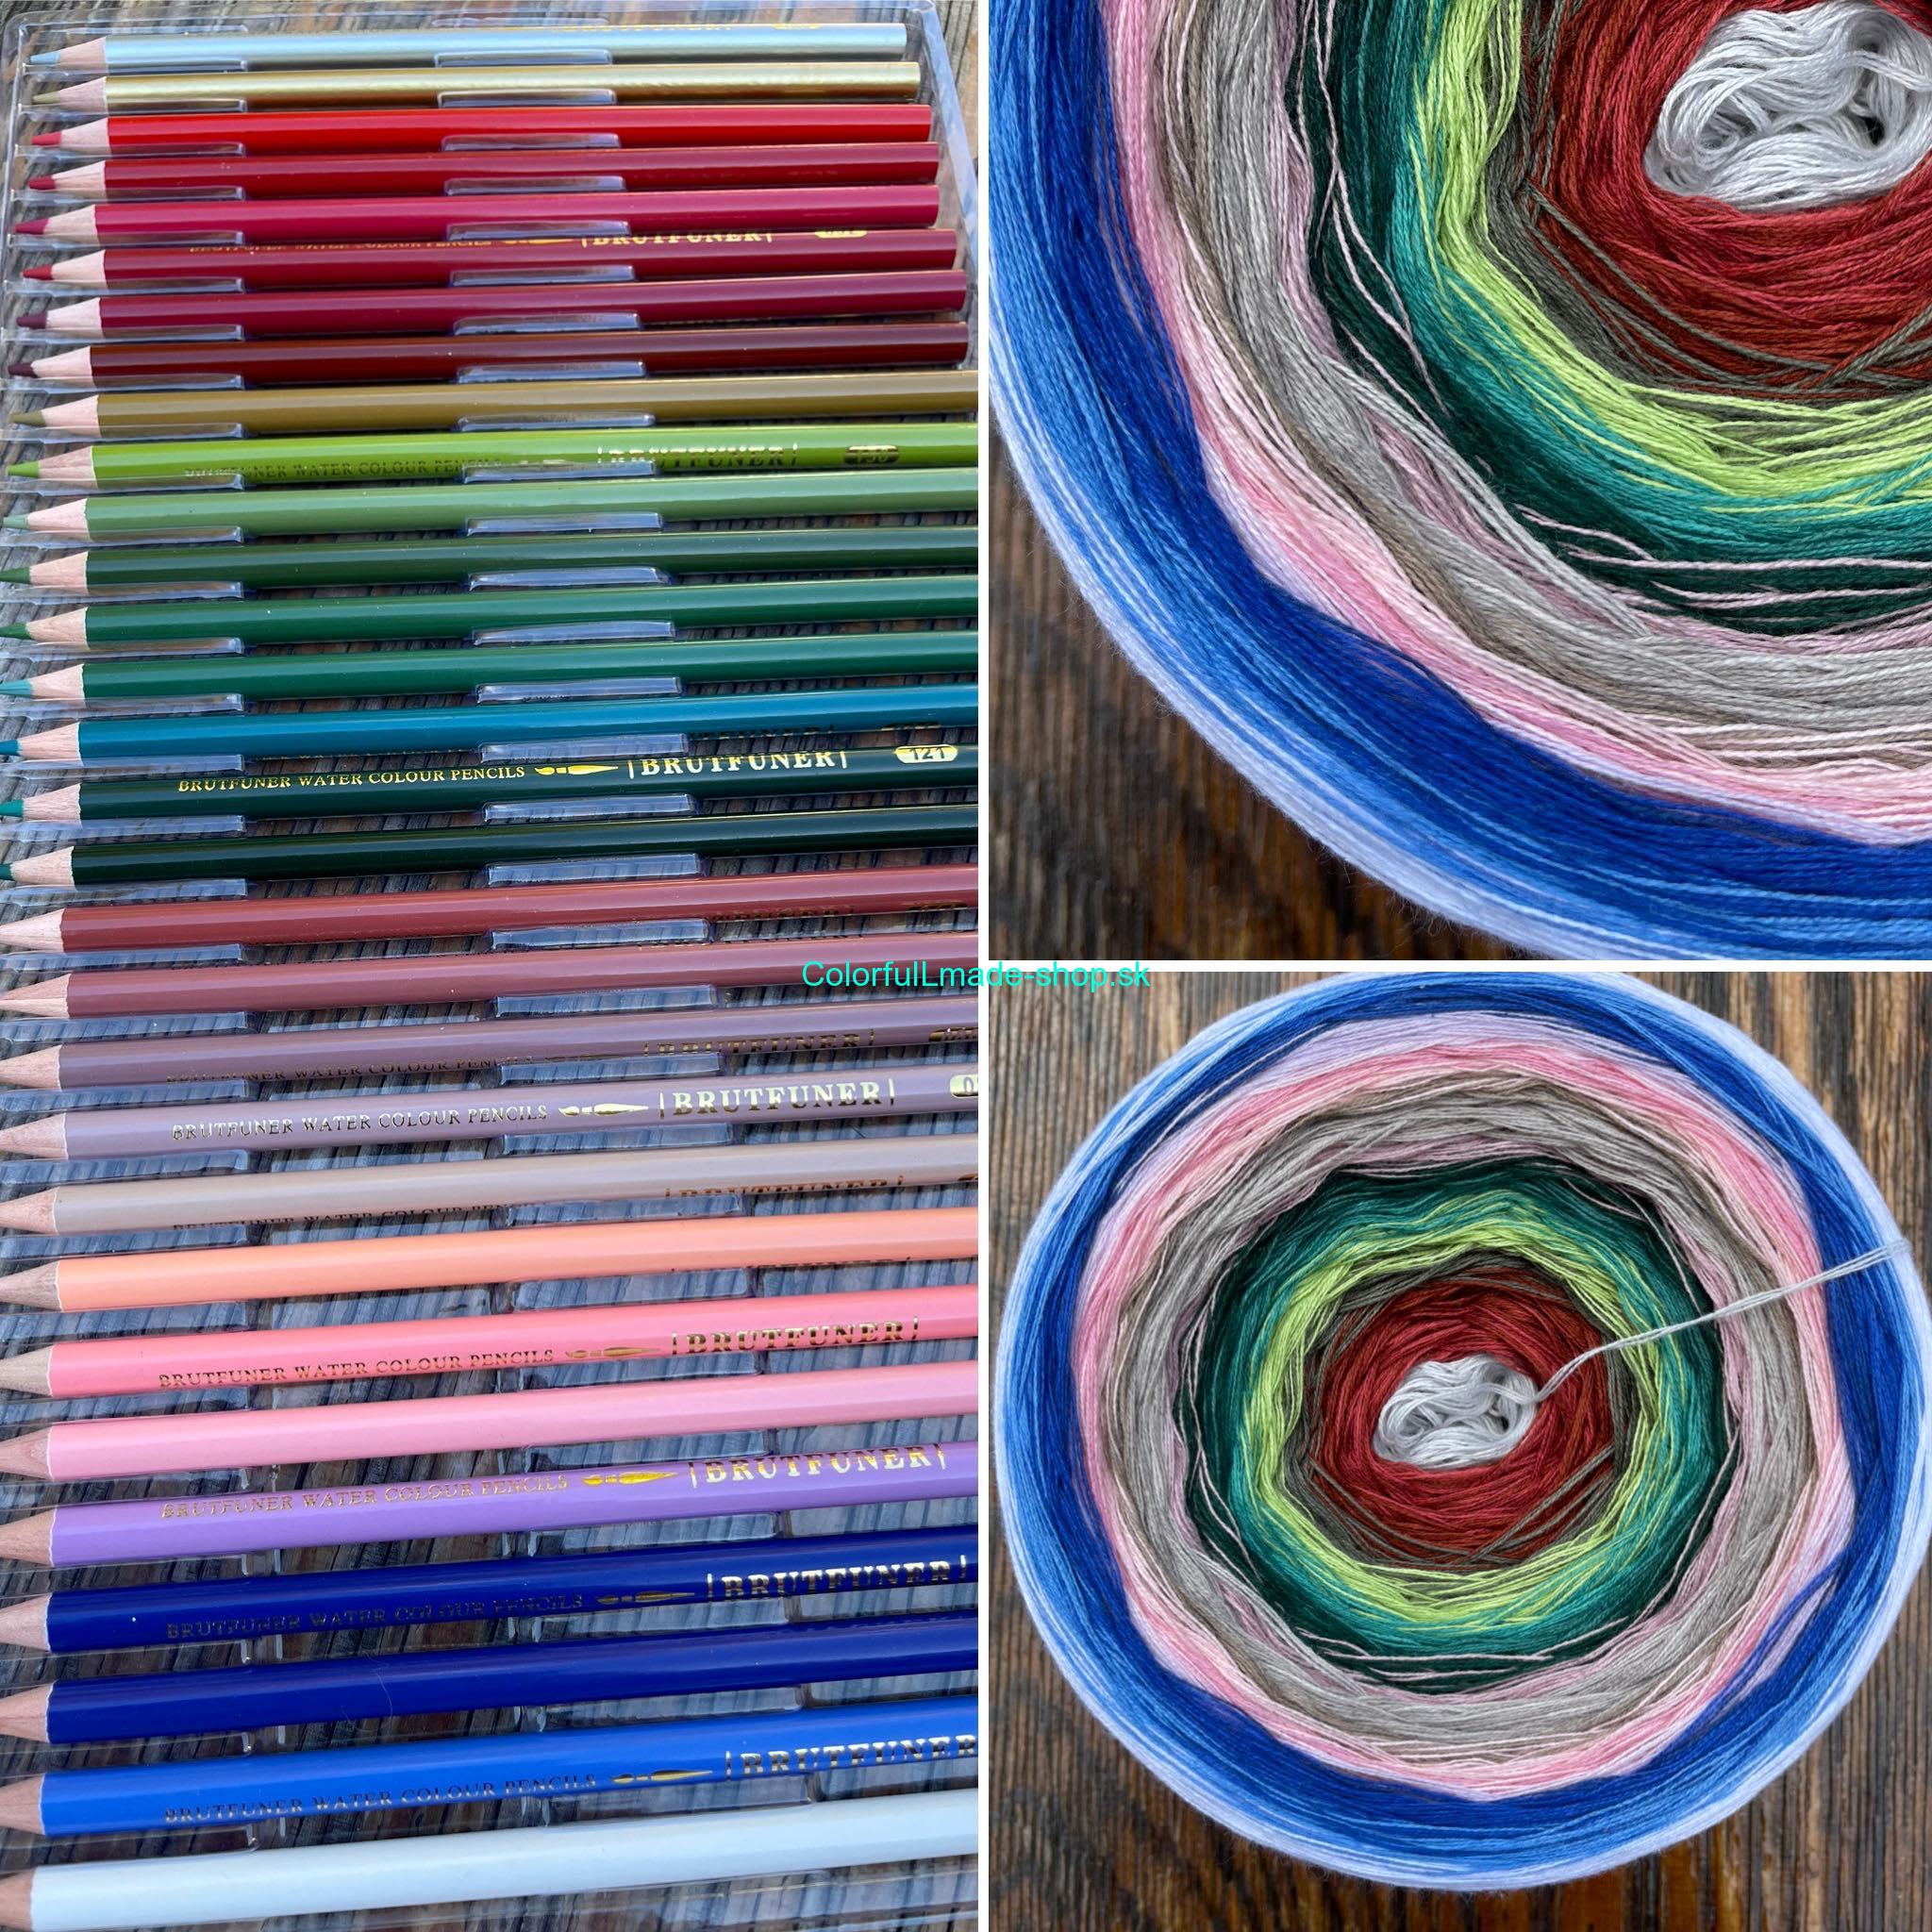 Magic Beauty - 20 Colors - Pencils VI. 4ply / 2500m